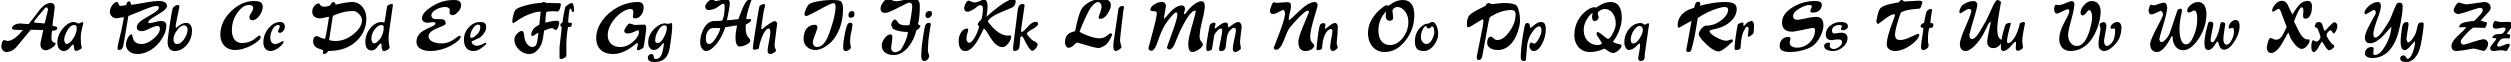 Пример написания английского алфавита шрифтом Express